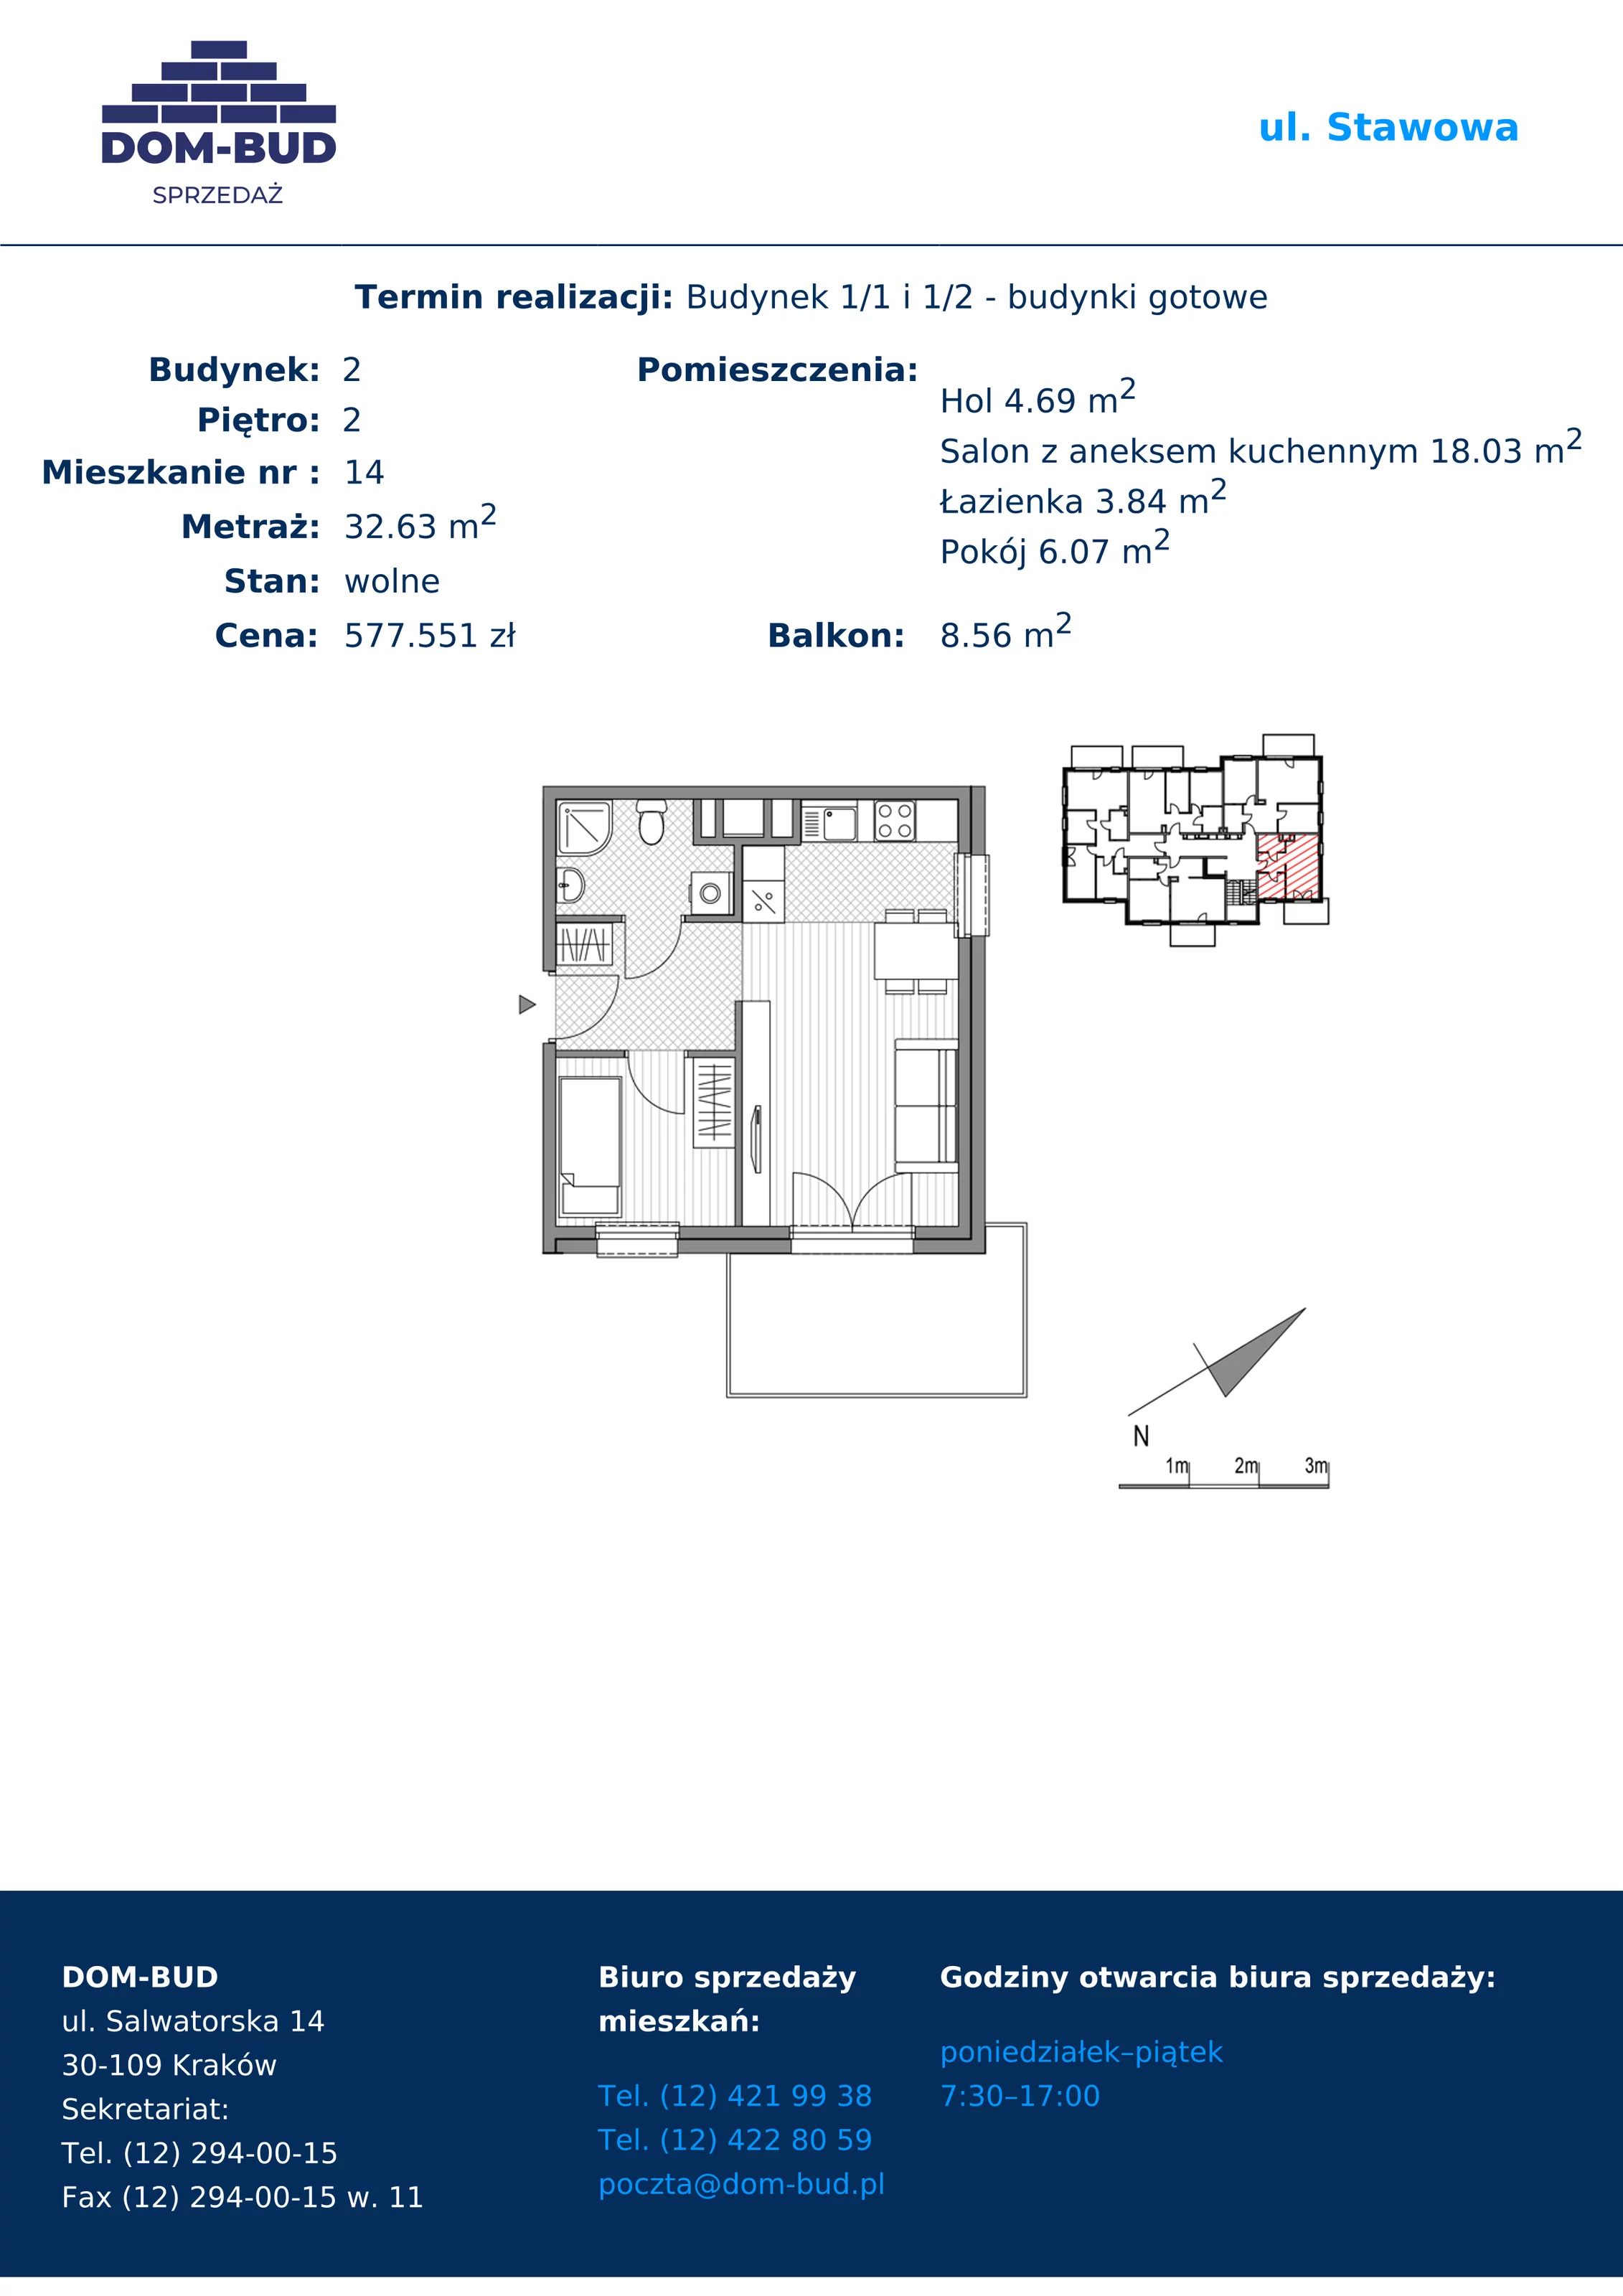 Mieszkanie 32,63 m², piętro 2, oferta nr 1/2-14, ul. Stawowa, Kraków, Prądnik Biały, Bronowice Wielkie, ul. Stawowa 242